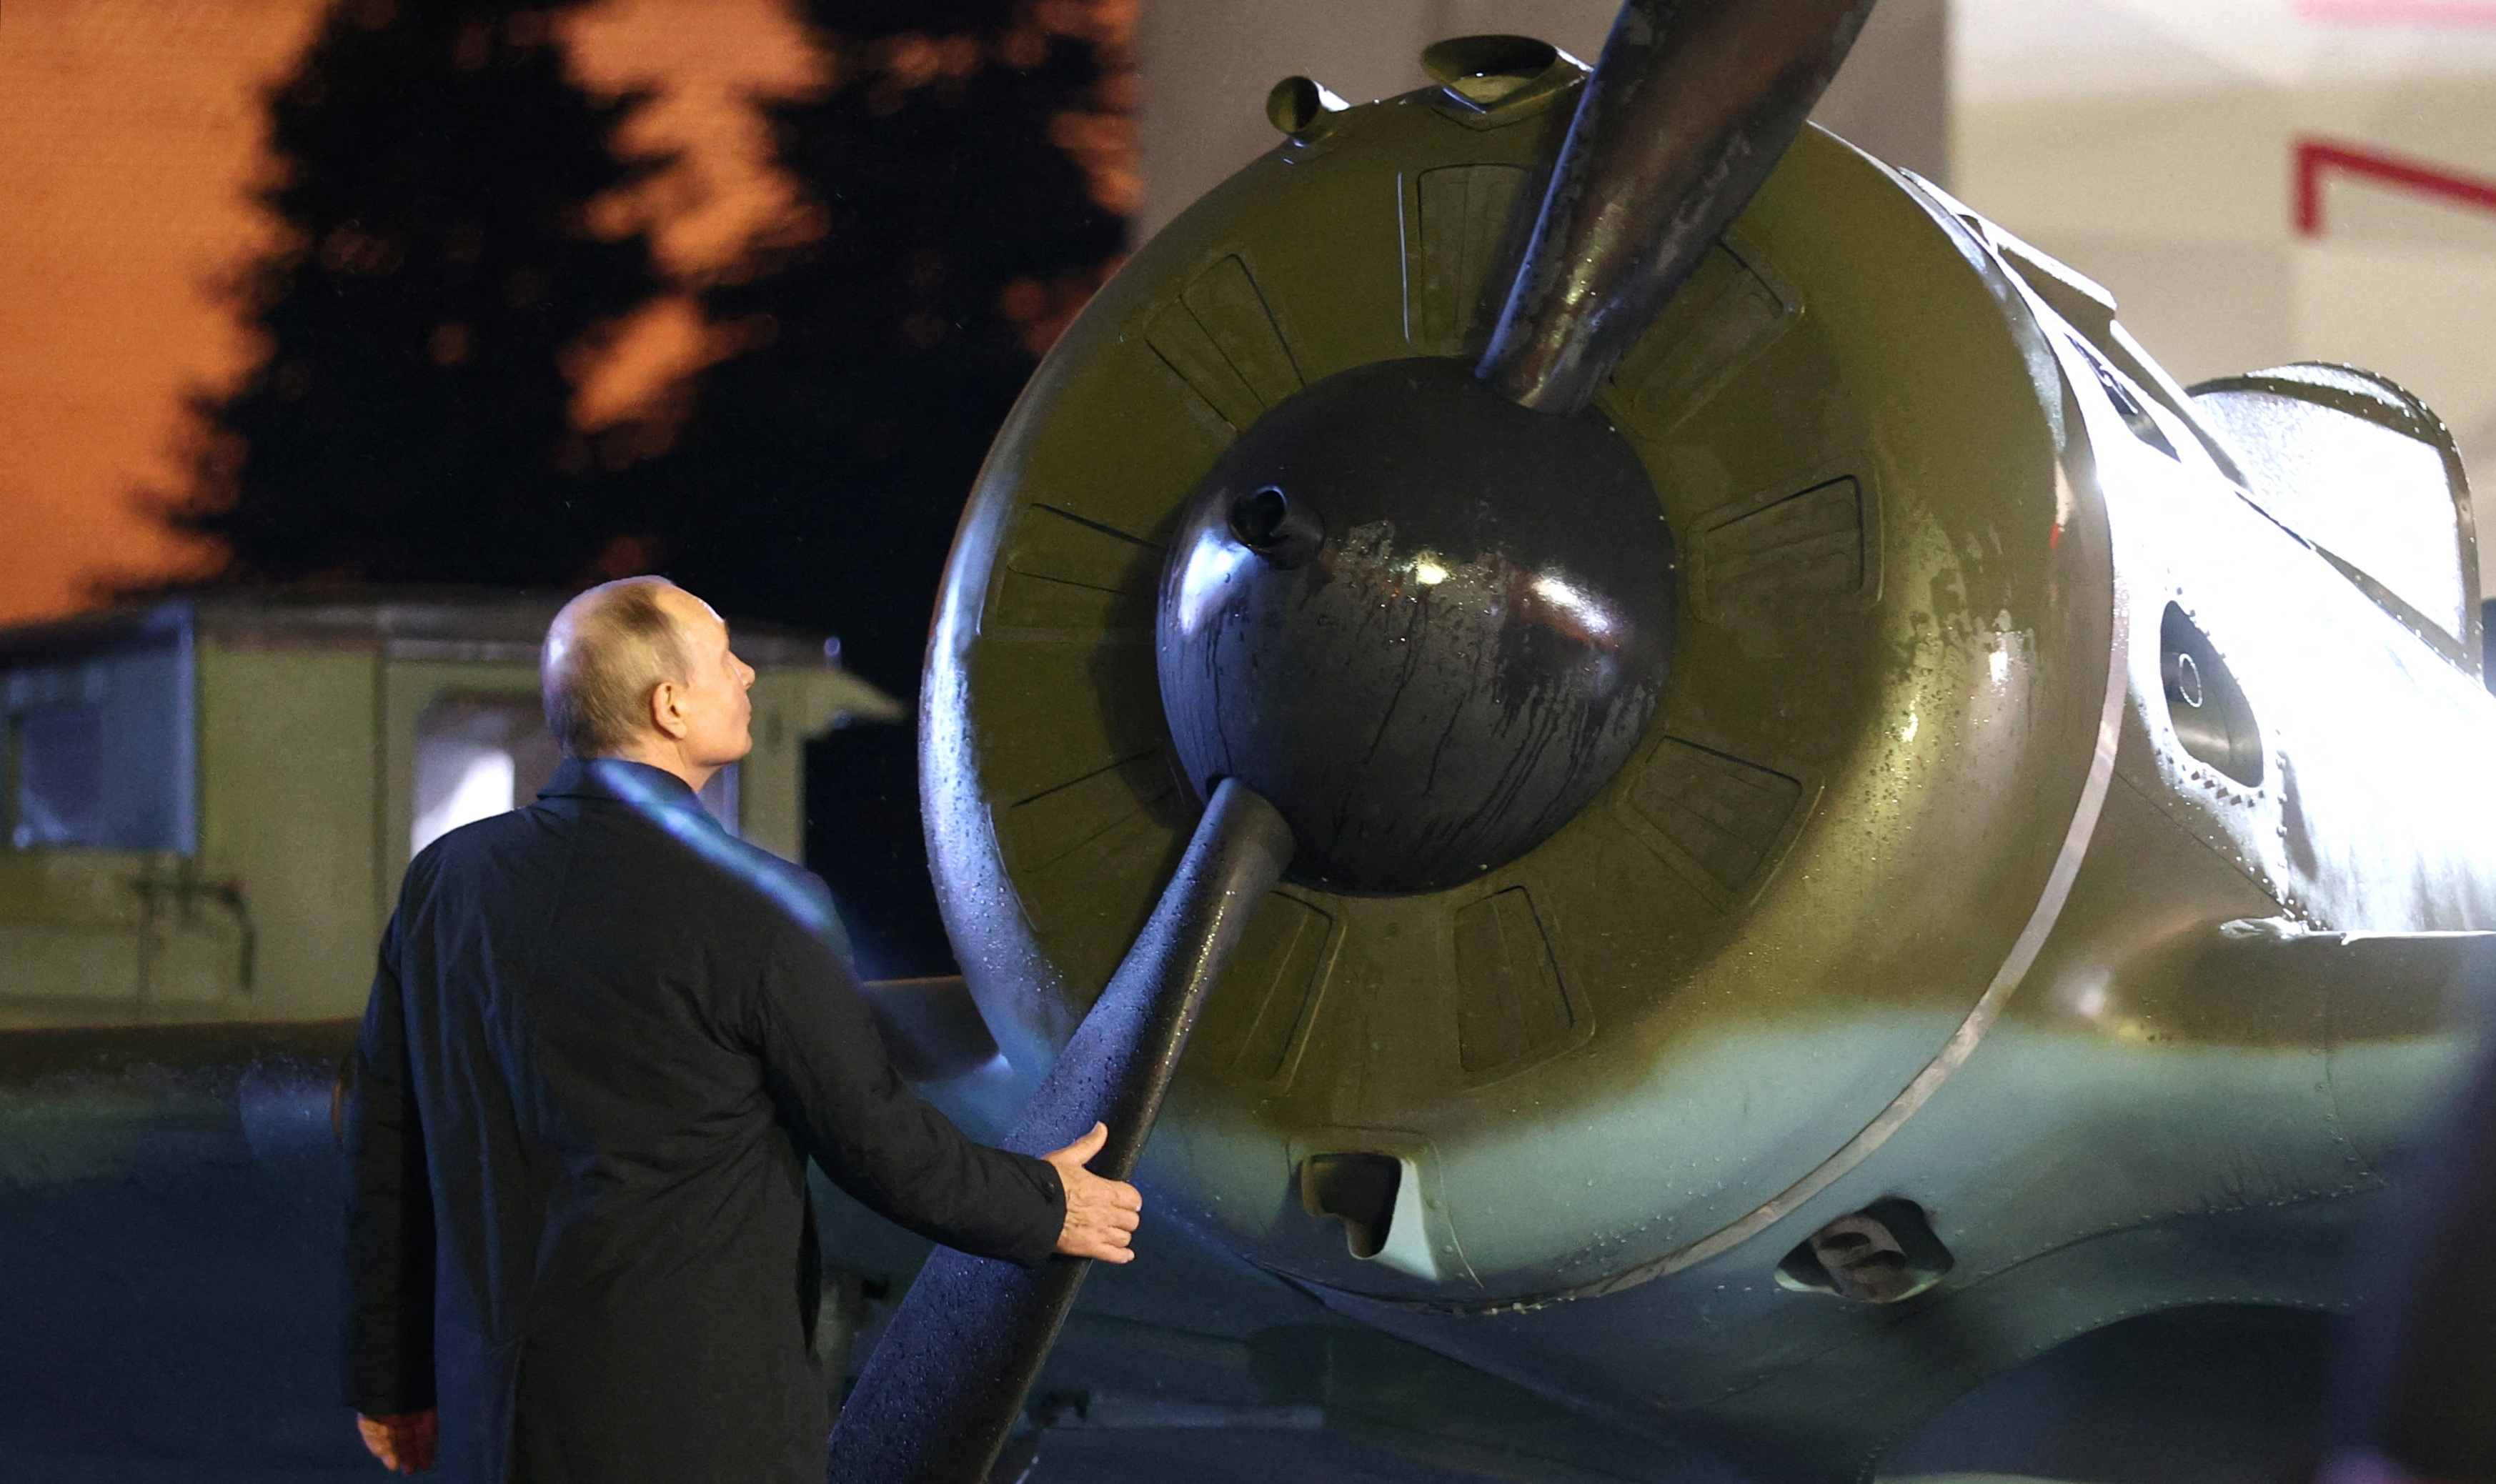 Vladimir Putin se muestra junto a un avión militar mientras asiste a una exposición que conmemora el aniversario de un desfile histórico en 1941, cuando los soldados soviéticos marcharon hacia el frente durante la Segunda Guerra Mundial, en la Plaza Roja en el centro de Moscú, Rusia, este 8 de noviembre (Reuters)